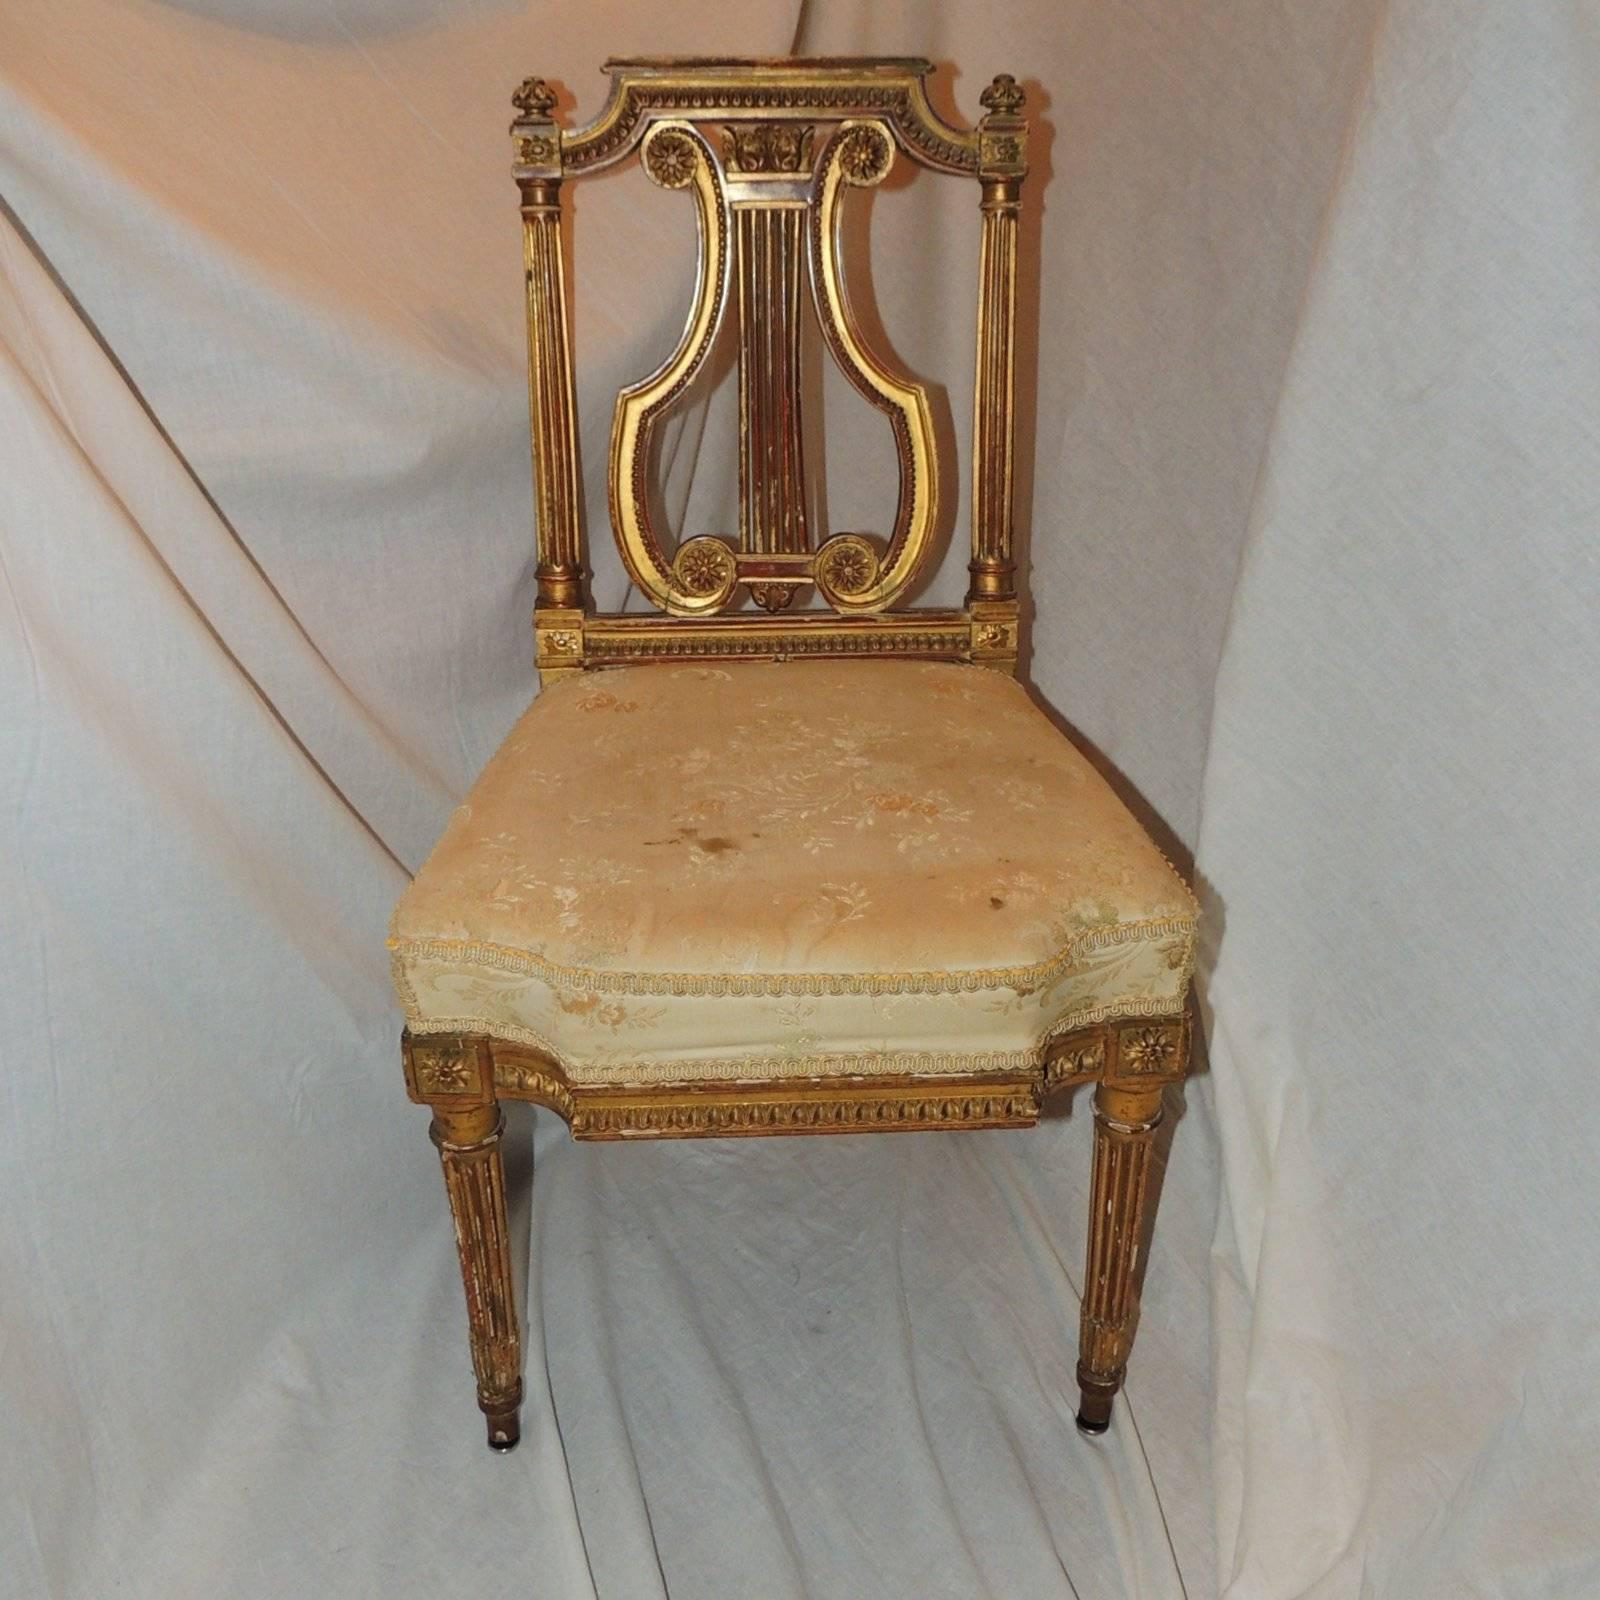 Wundervoller Satz von FÜNF (5) französischen vergoldeten Harfenleier Rücken Regency neoklassischen Esszimmer oder Wohnzimmer Damen Seite Stühle geschnitzt

Verkauft pro Stuhl

Maße: 18 breit x 33 hoch

Sitz: 14,5 tief x 17 hoch